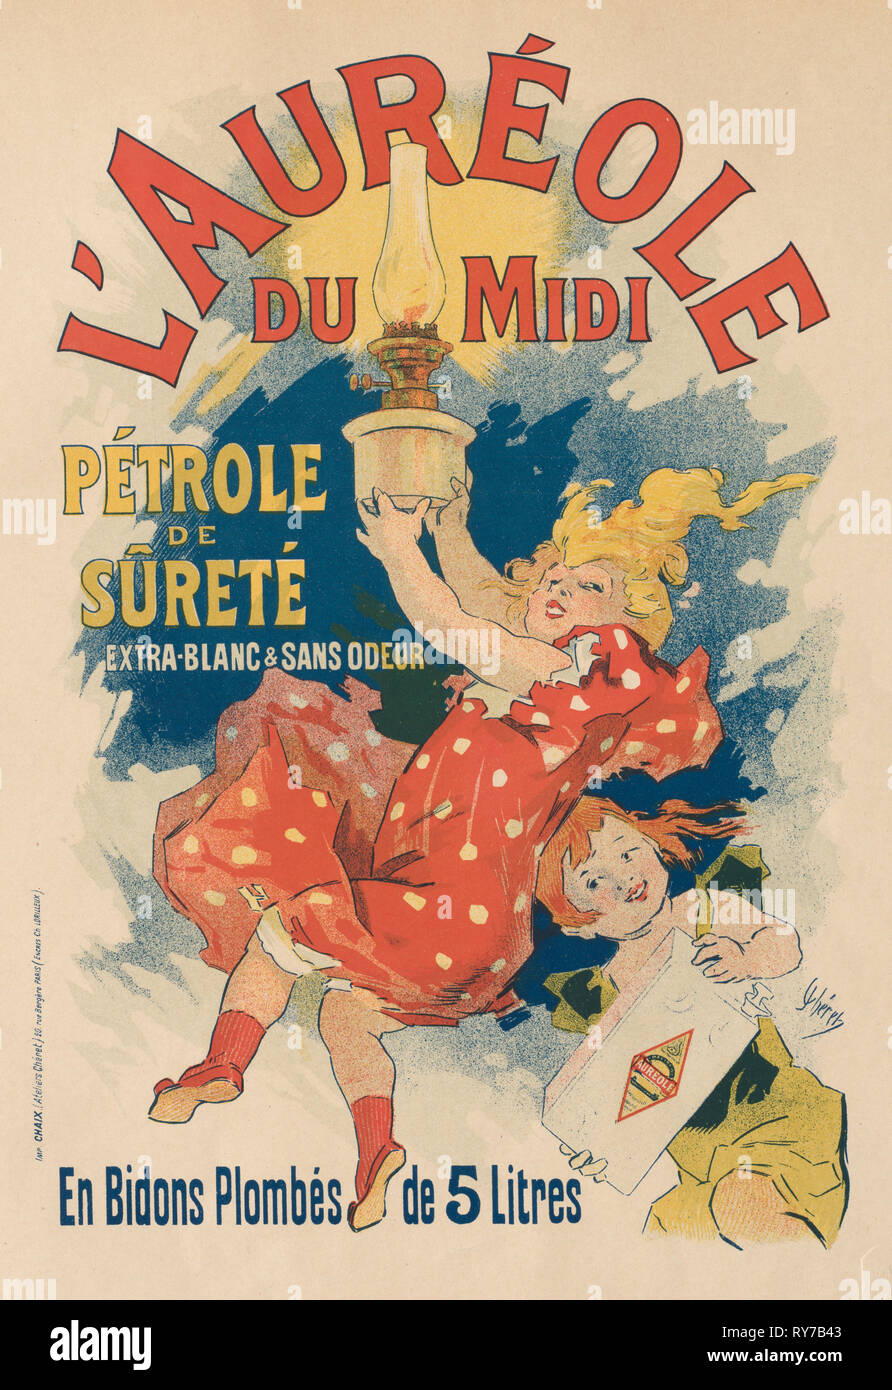 L'Aura de midi, 1893. Jules Chéret (Français, 1836-1932), Encres Lorilleux & Co.. Lithographie couleur ; feuille : 39,1 x 28,9 cm (15 3/8 x 11 3/8 in.) ; image : 30,3 x 19,8 cm (11 15/16 x 7 13/16 in Banque D'Images